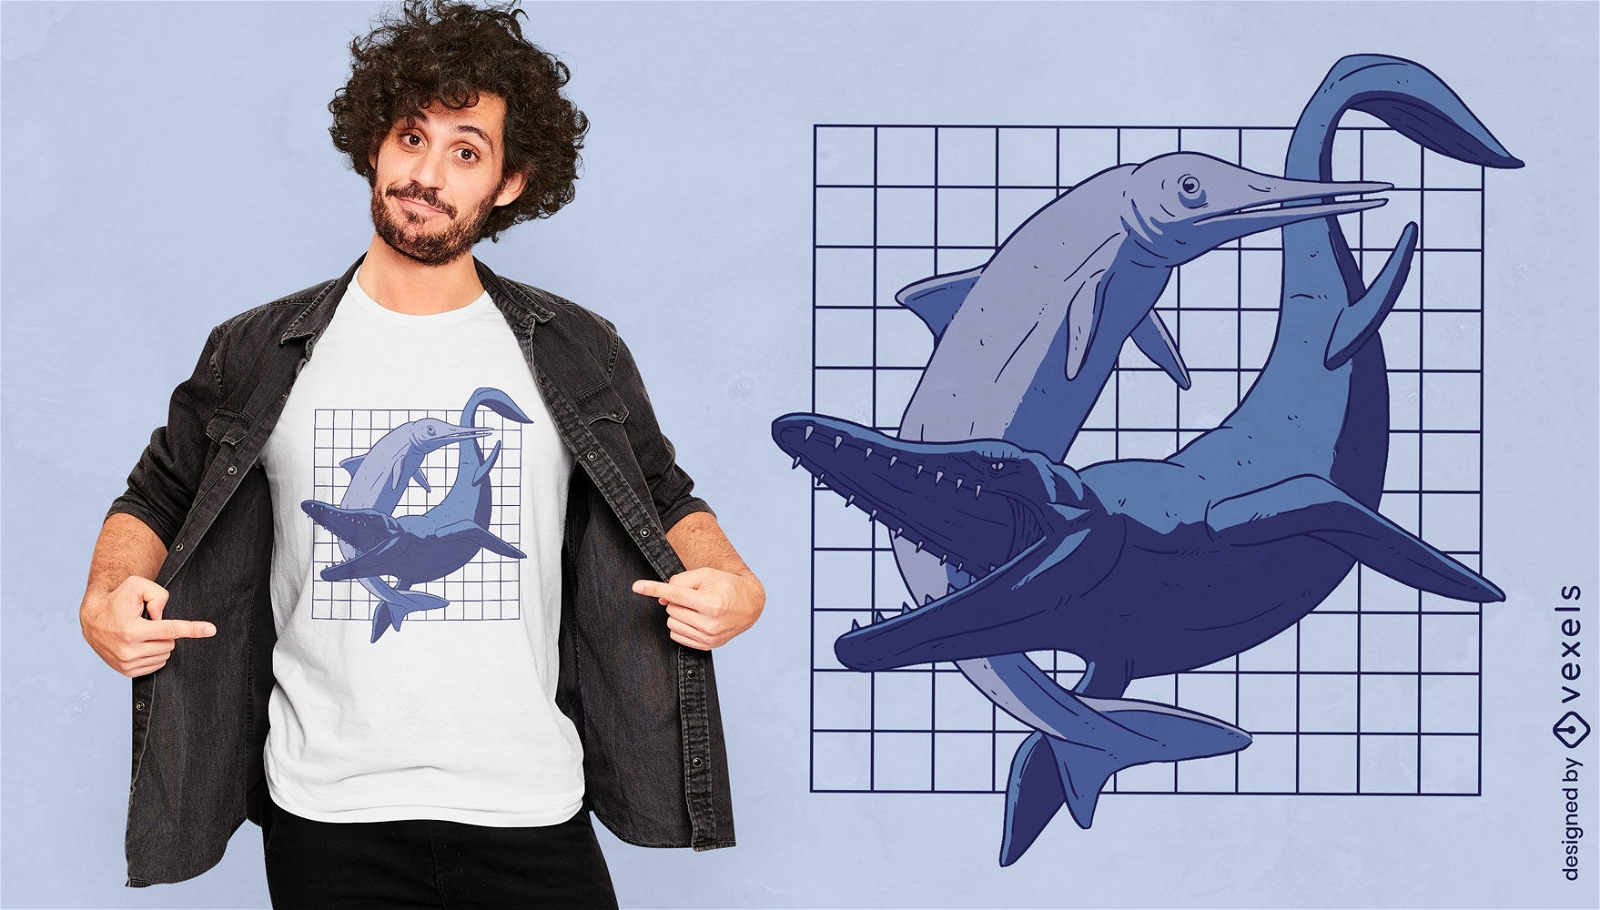 Dise?o de camiseta de animales de dinosaurios marinos.